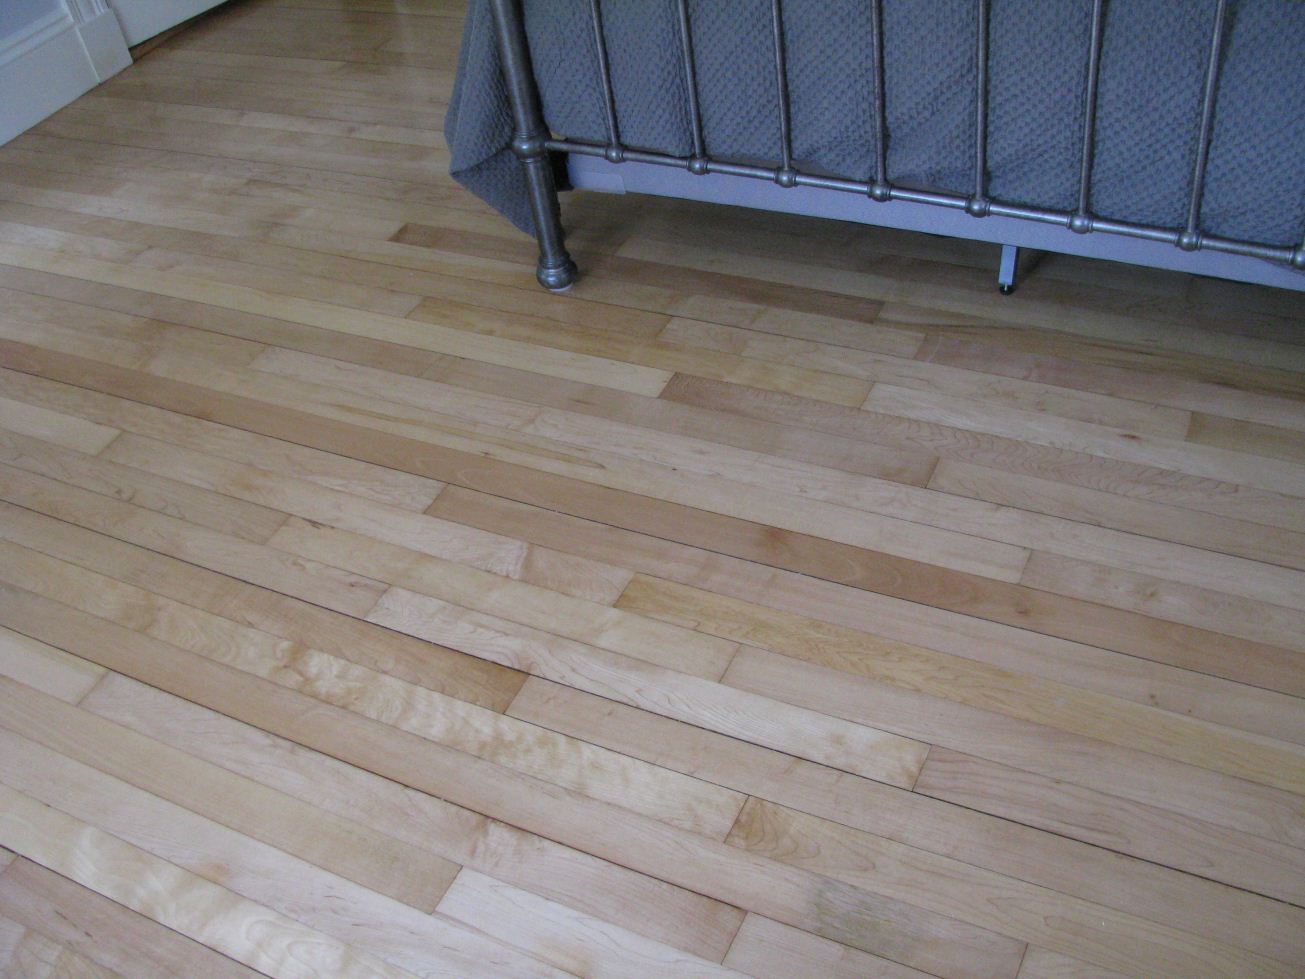 Maple New Floors Inc, 2 1 4 Maple Hardwood Flooring Unfinished